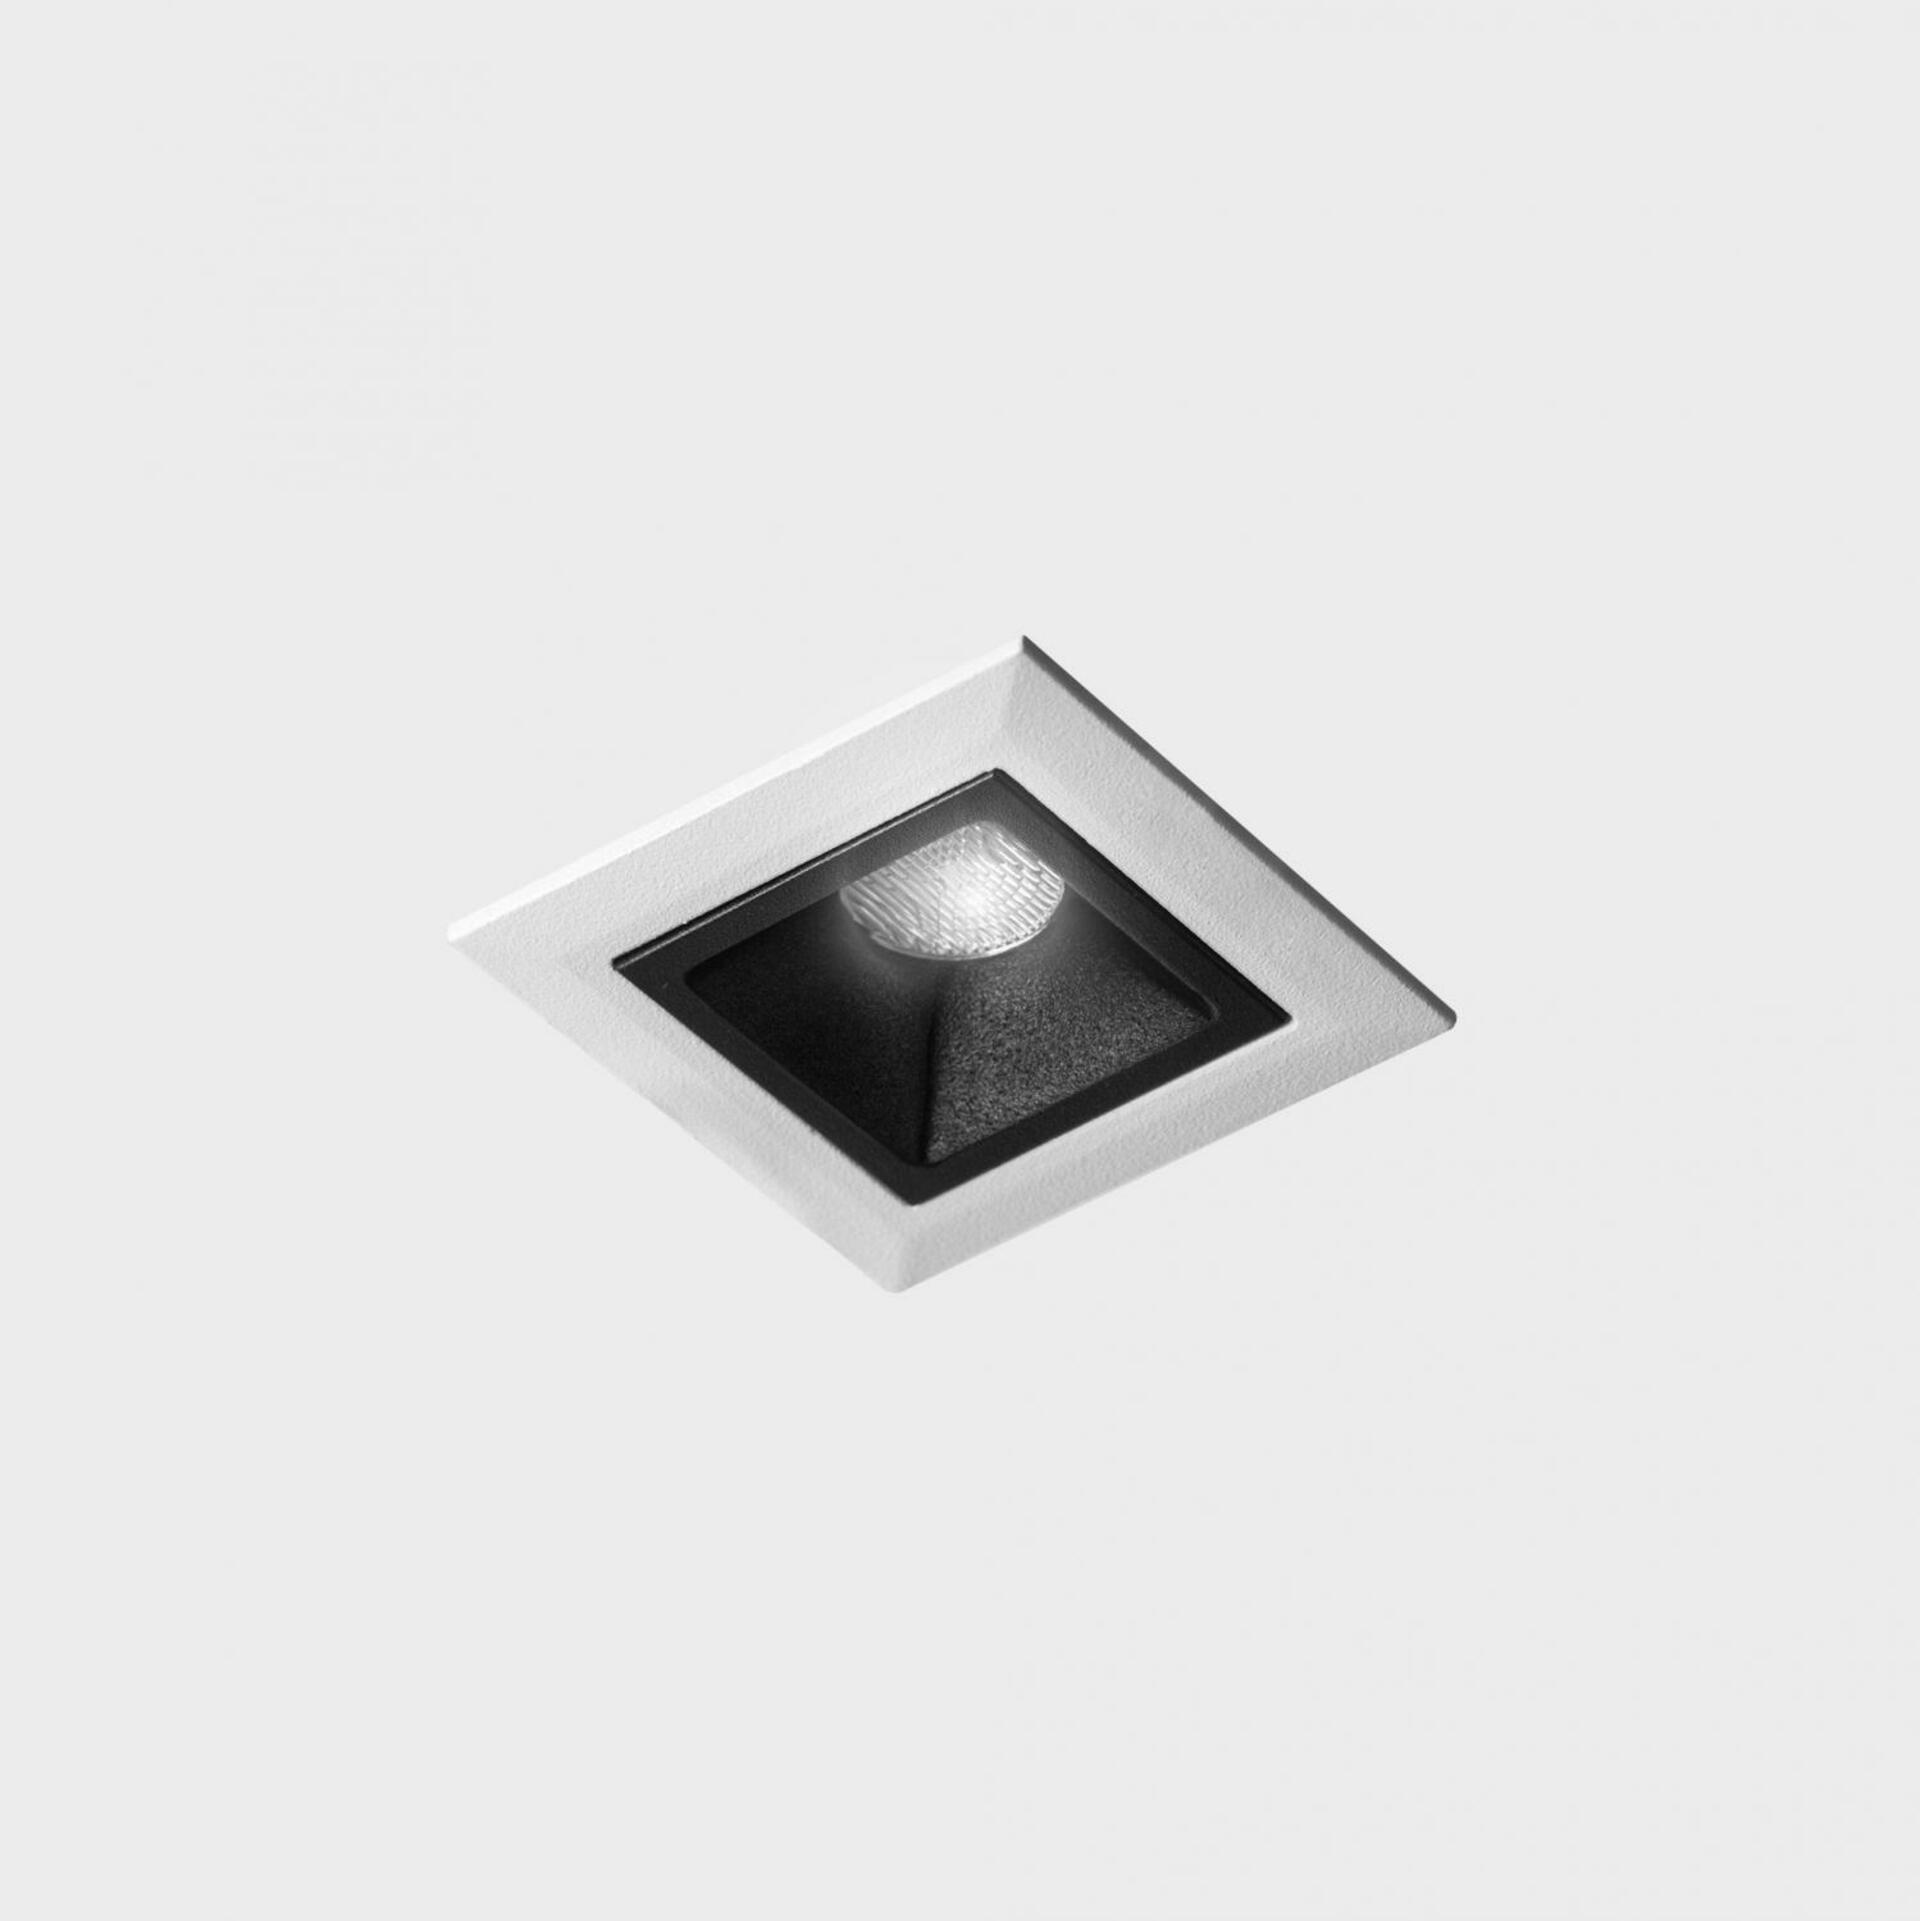 KOHL LIGHTING KOHL-Lighting NSES zapuštěné svítidlo s rámečkem 45x45 mm bílá-černá 2 W CRI 90 4000K PUSH